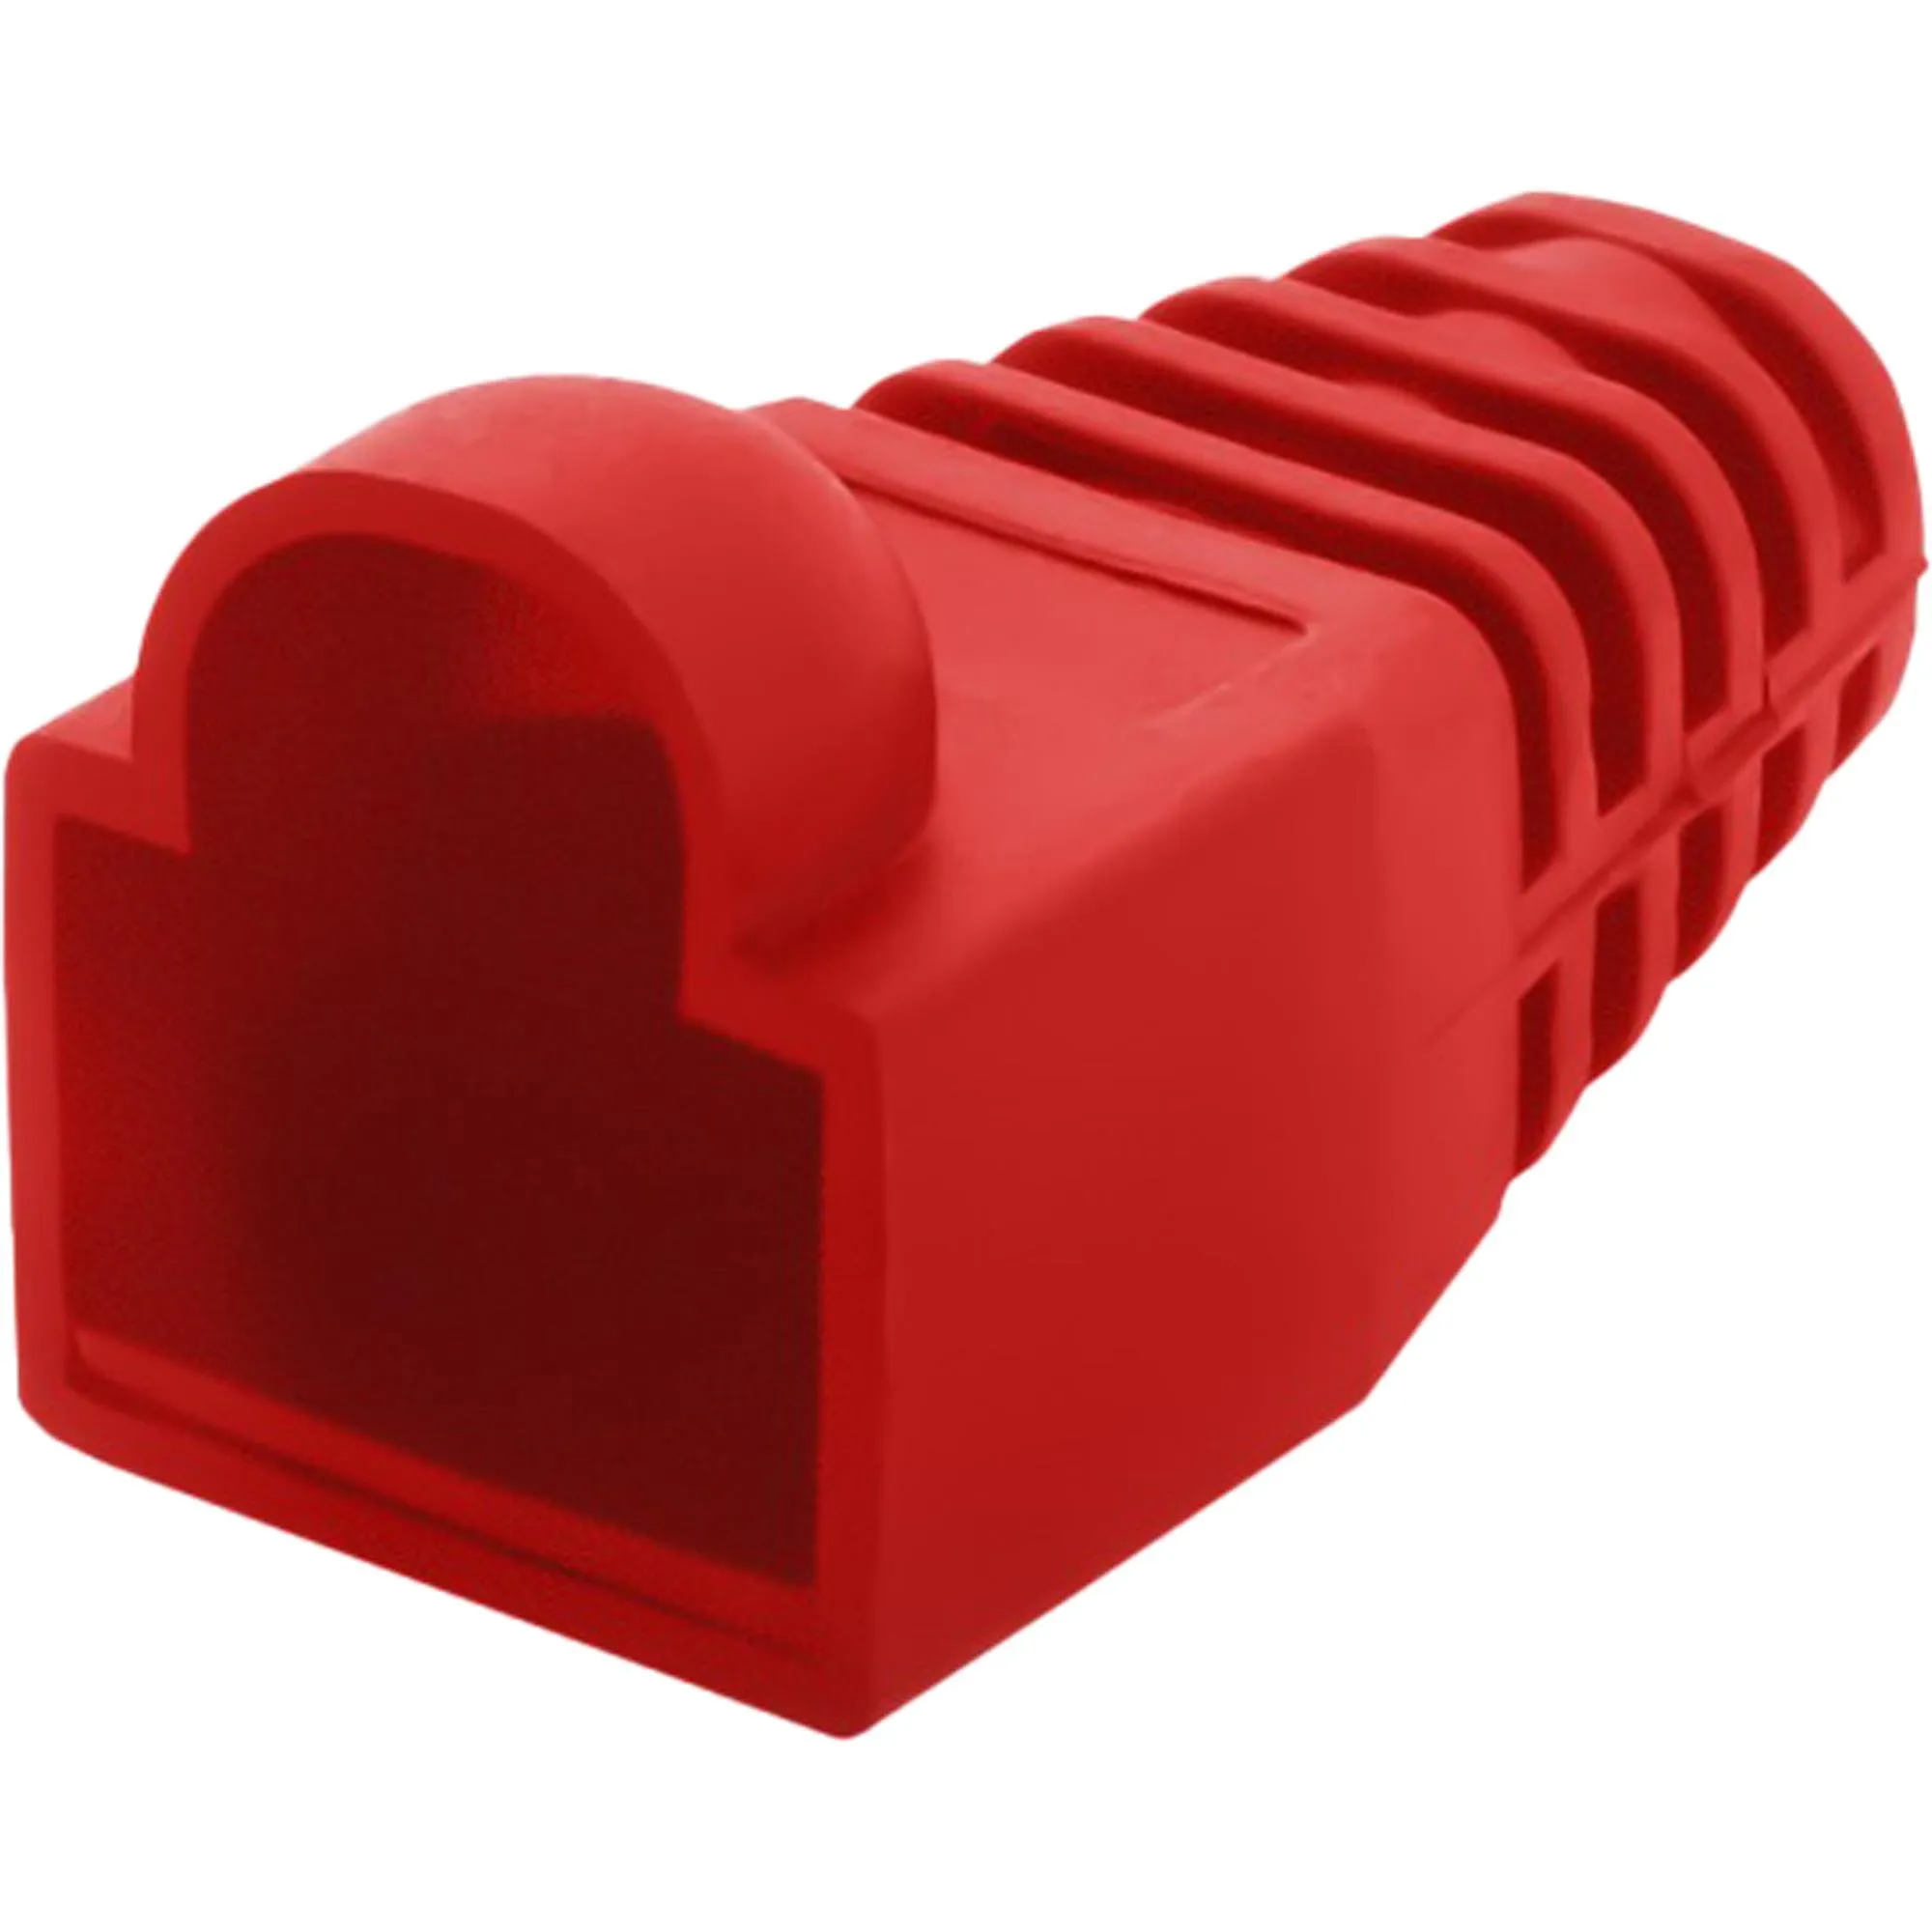 Capa Para Plug Modular Vermelho Storm (82157)